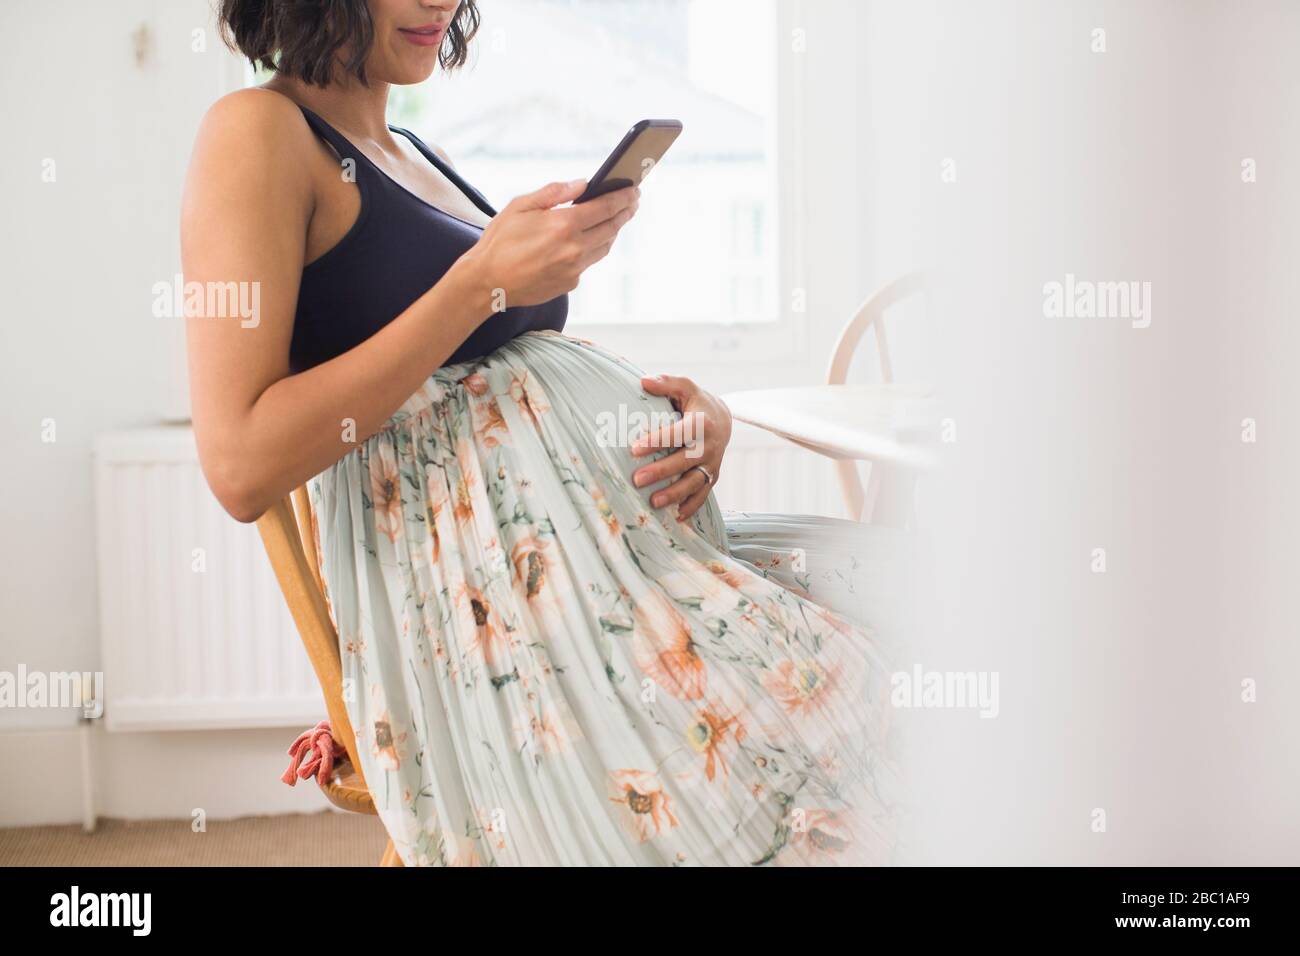 Schwangere Frau im Blumenrock mit Magen Stockfoto